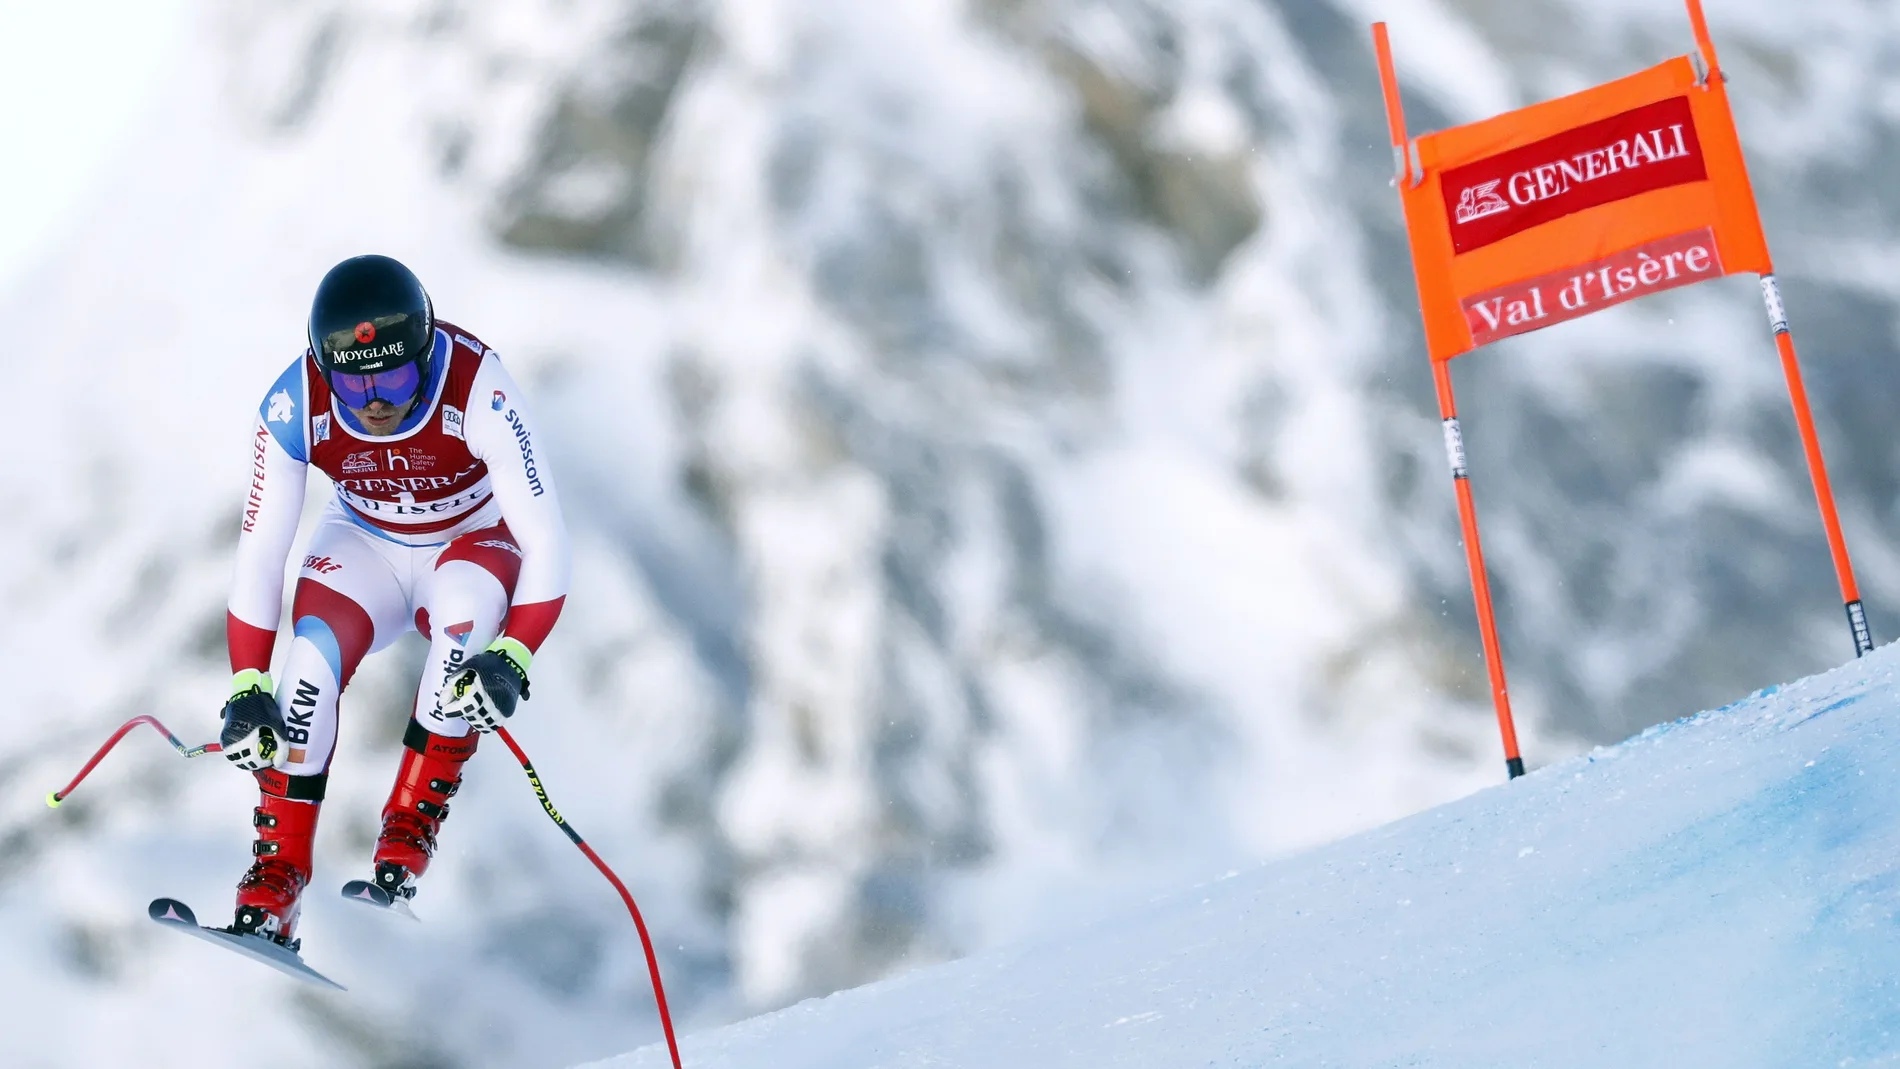 El suizo Mauro Caviezel en acción durante la prueba de descenso en la Copa del Mundo de Esquí Alpino en Val d'Isere, Francia. EFE/EPA/GUILLAUME HORCAJUELO